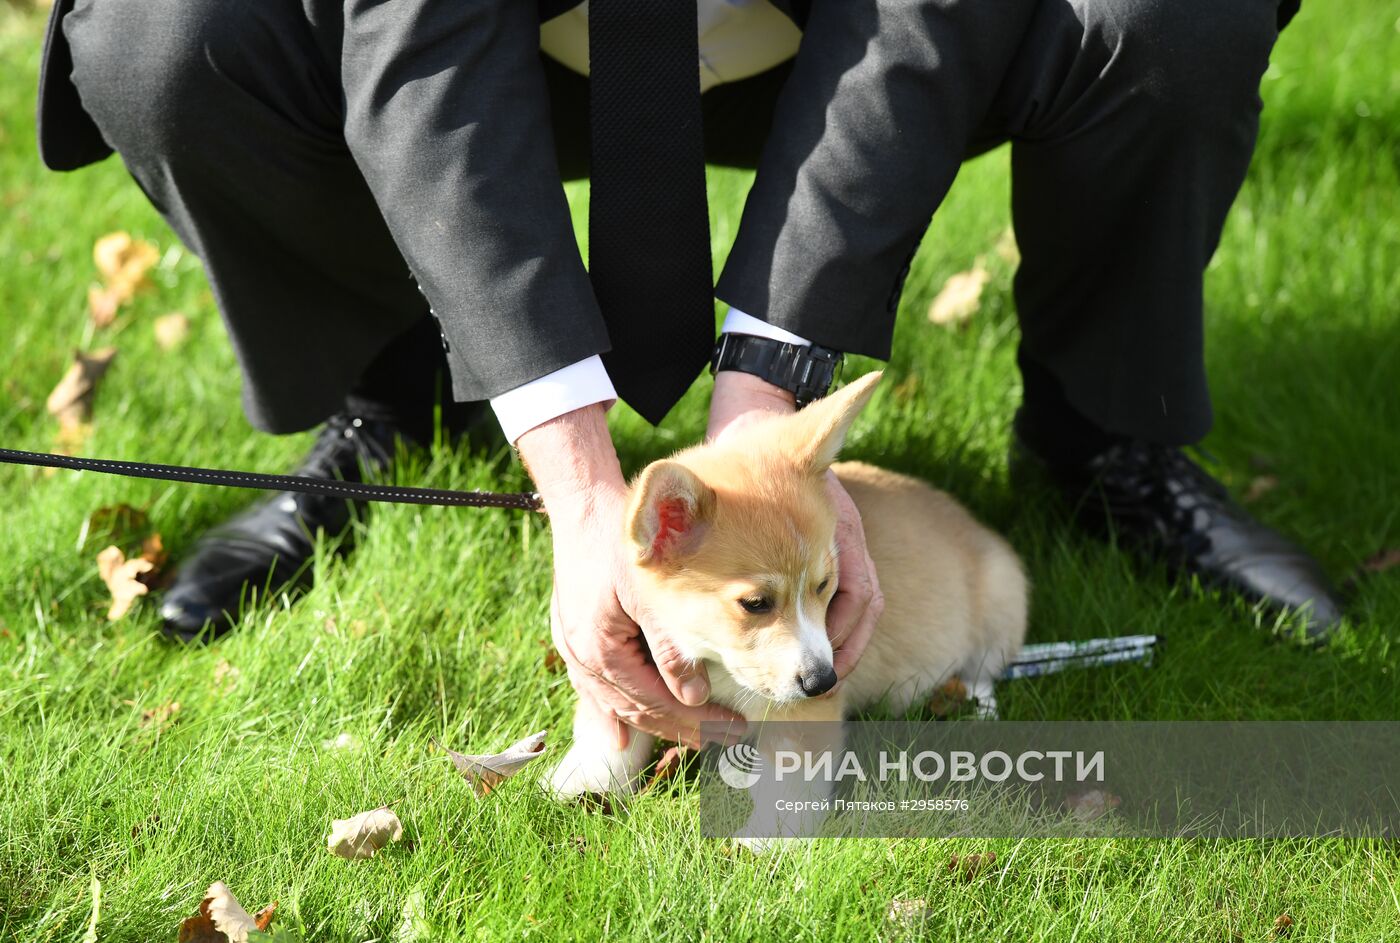 Патриарху Кириллу подарили в Лондоне щенка корги